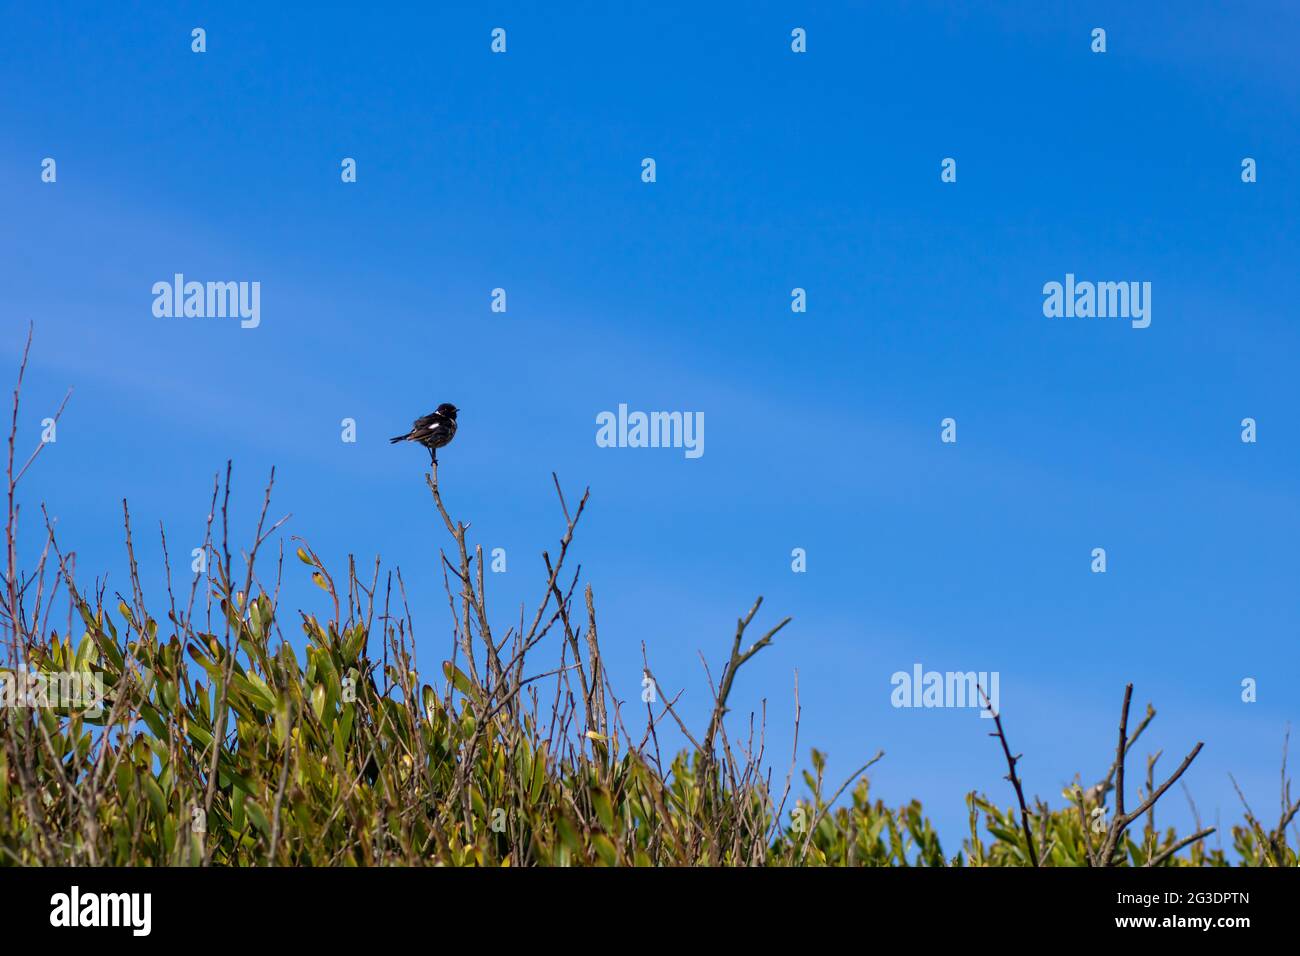 Pequeño cantonero africano de pie sobre una rama de arbustos contra el vibrante cielo azul. Fotografía de paisaje de aves en la zona costera con espacio de copia Foto de stock